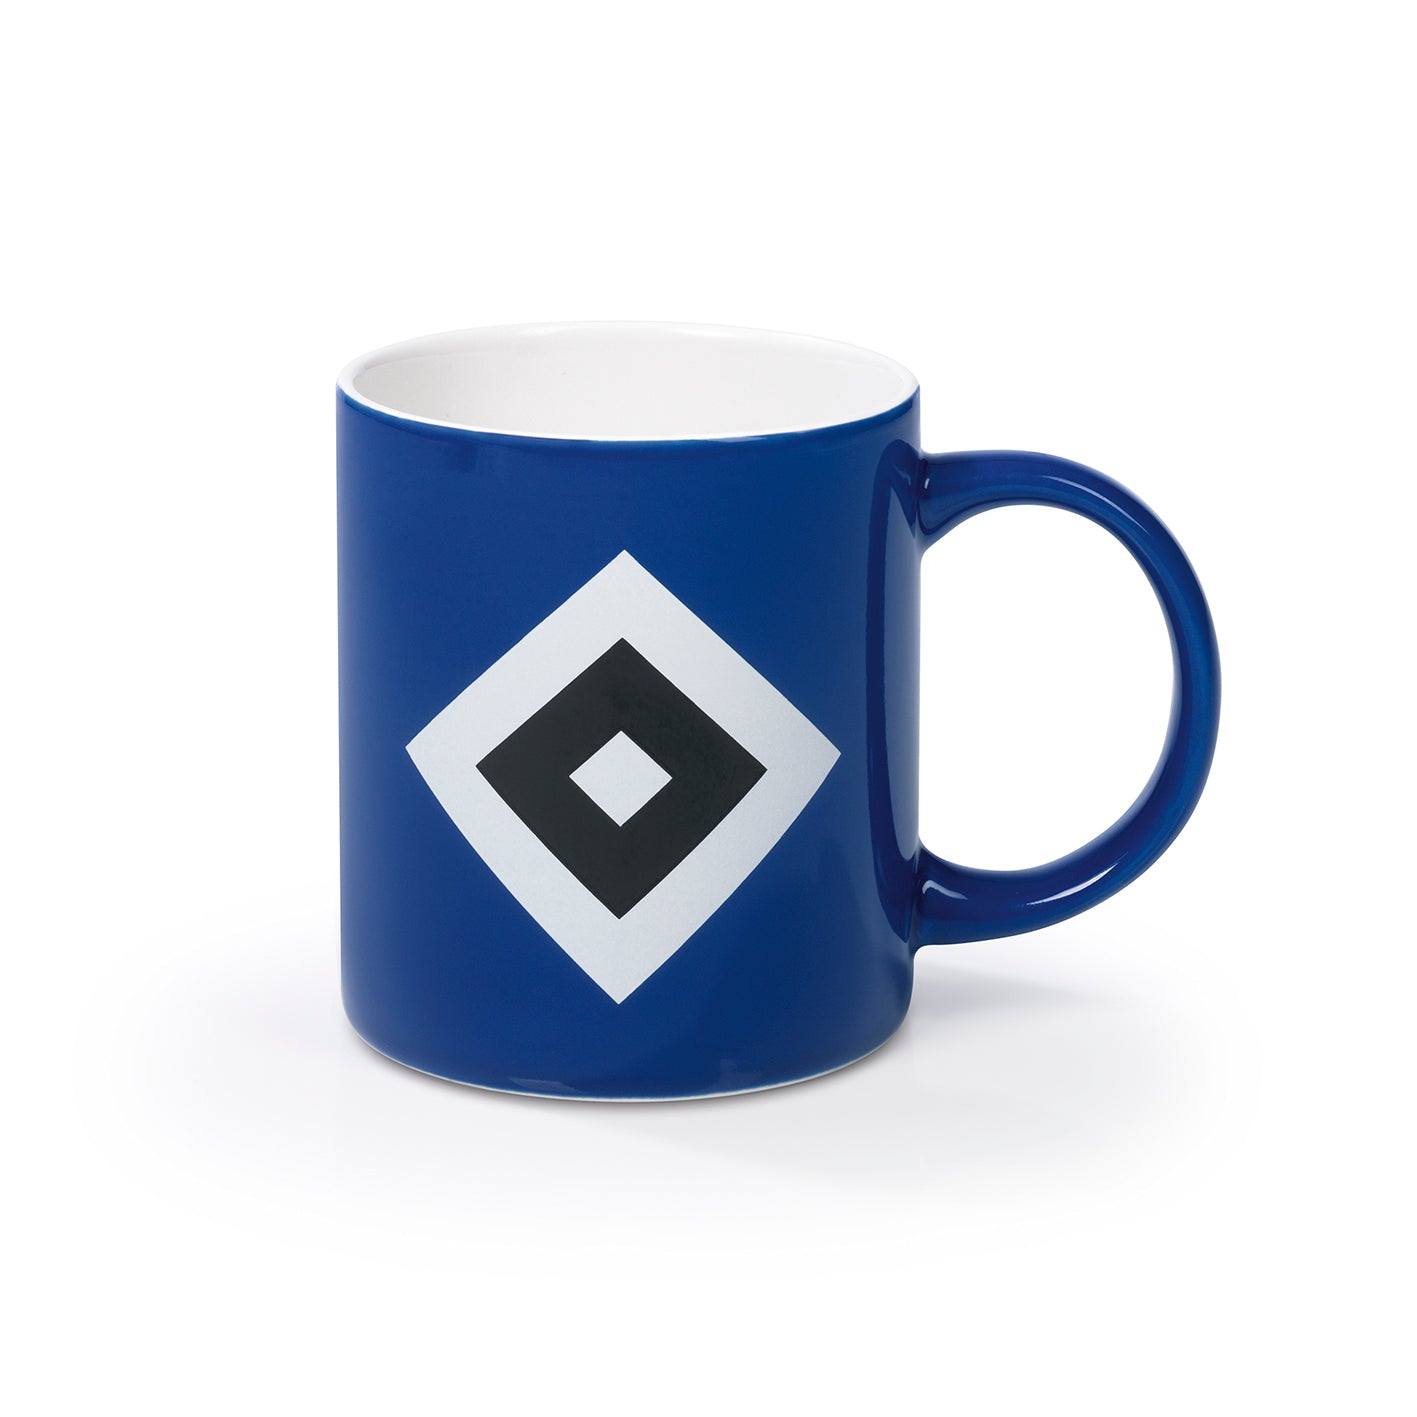 Kaffeebecher - Offizieller HSV Fanartikel - 350 ml - blau/weiß/schwarz mit Logo